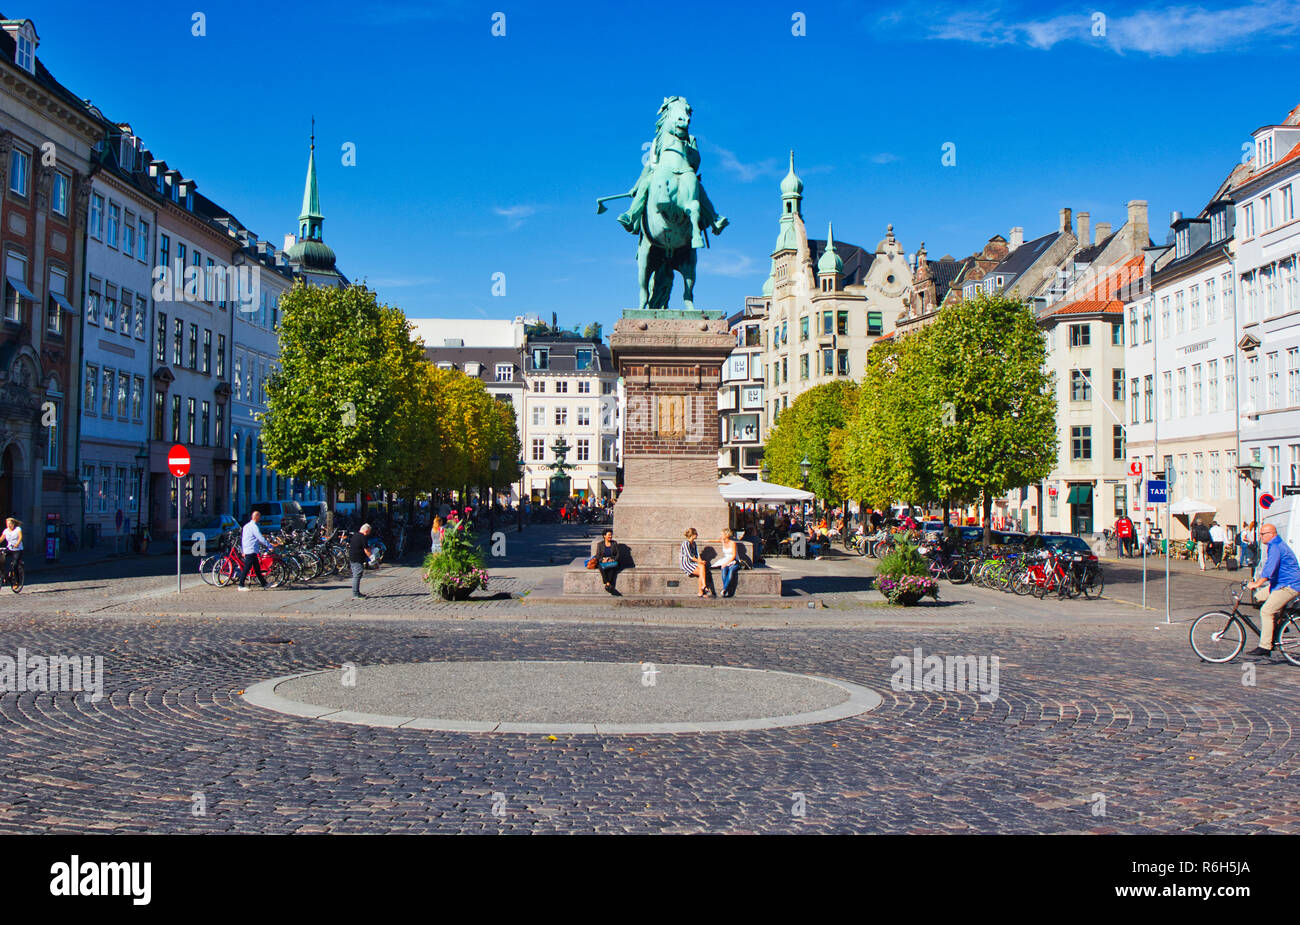 Statua equestre in bronzo del vescovo Absalon, fondatore di Copenhagen, Hojbro Plads, Indre, Copenhagen, Danimarca e Scandinavia Foto Stock